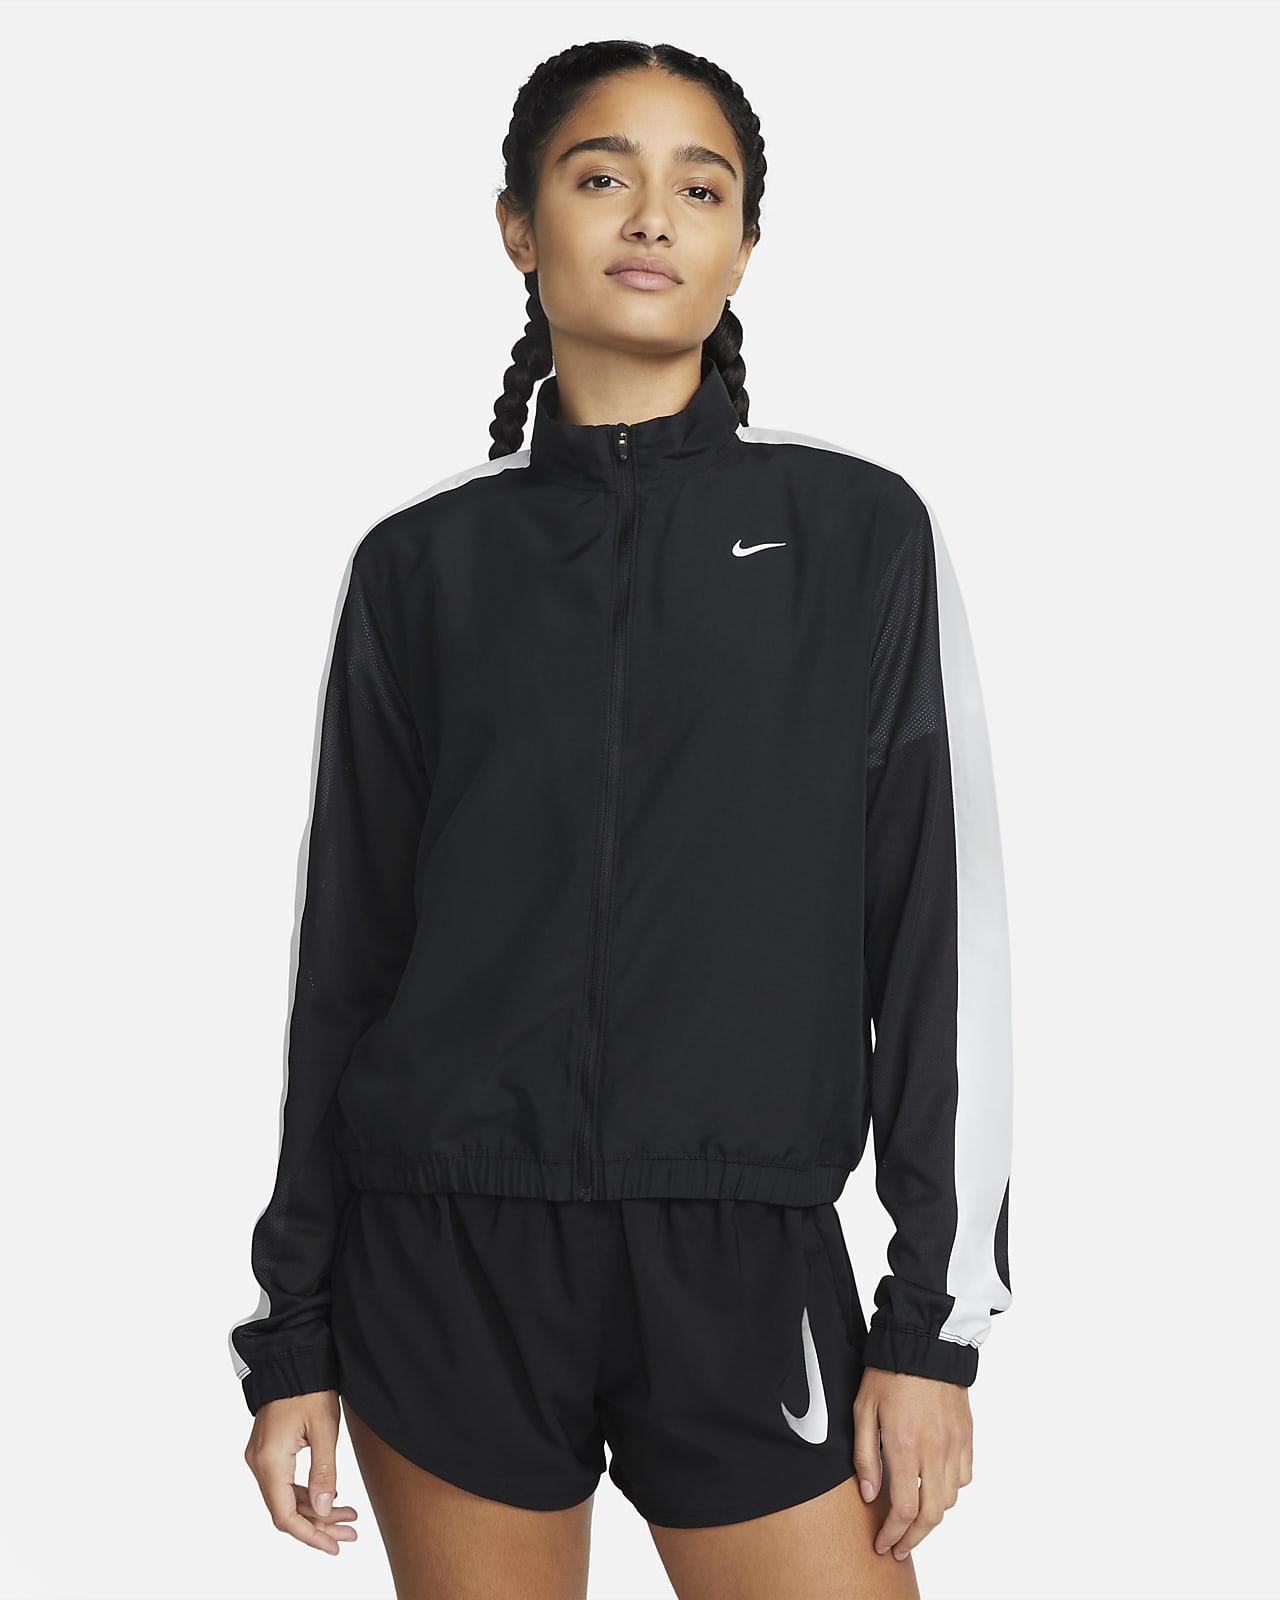 Löparjacka Nike Dri-FIT Swoosh Run för kvinnor